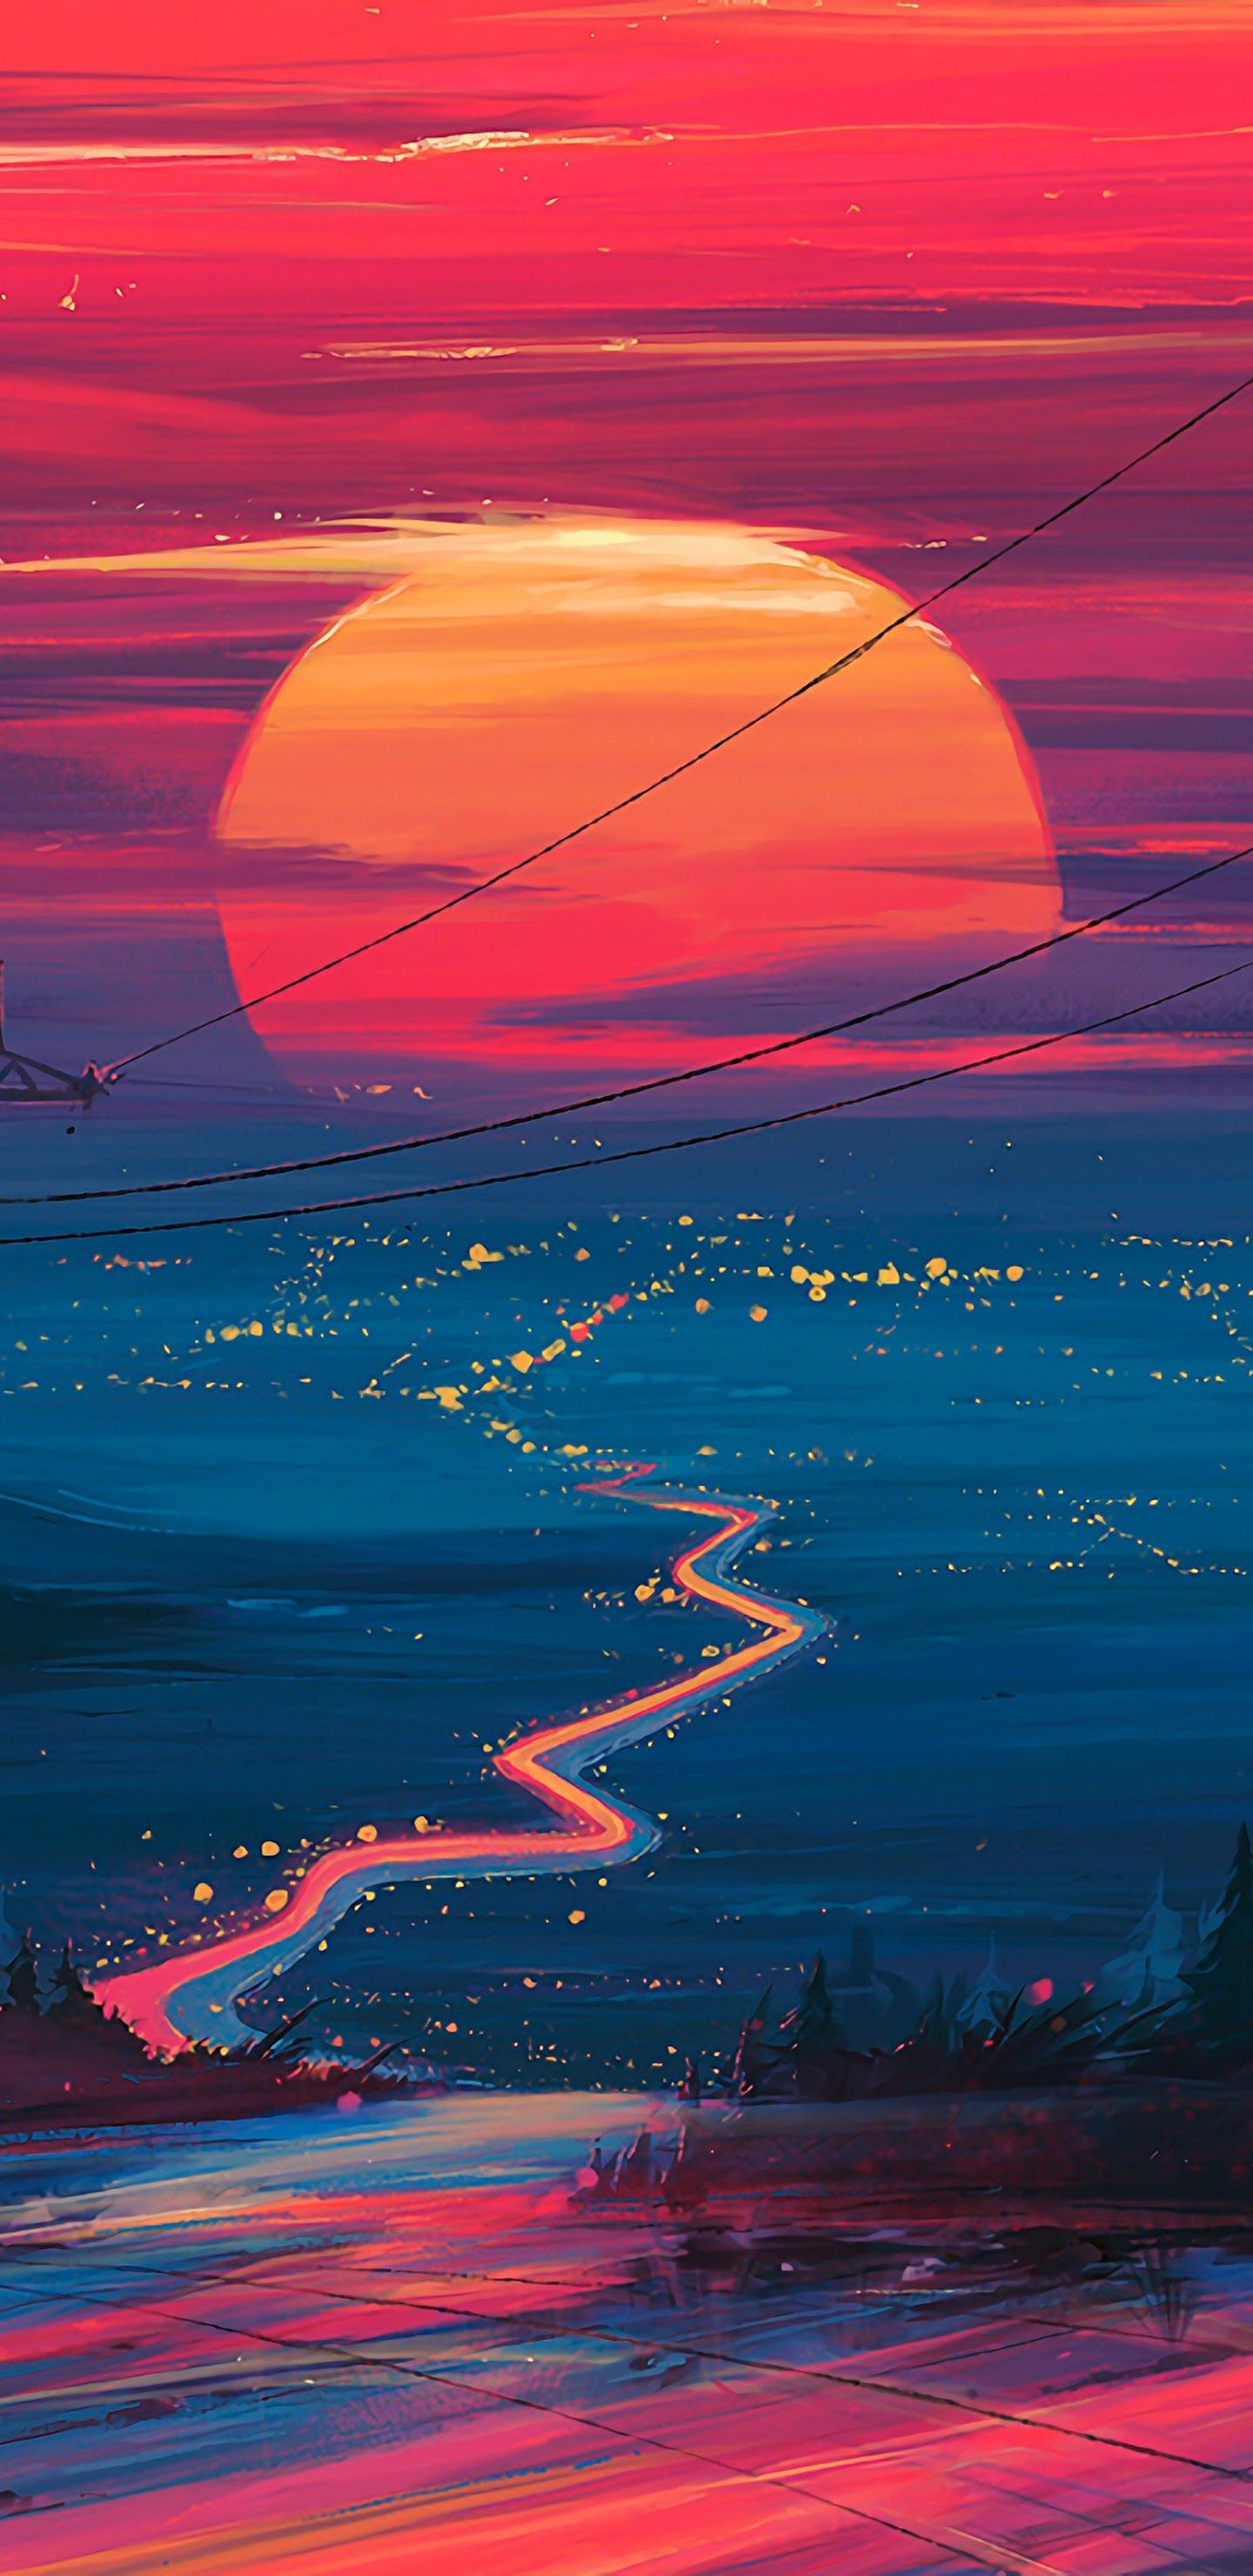 Sunset Horizon Scenery Landscape Art 4K Wallpaper